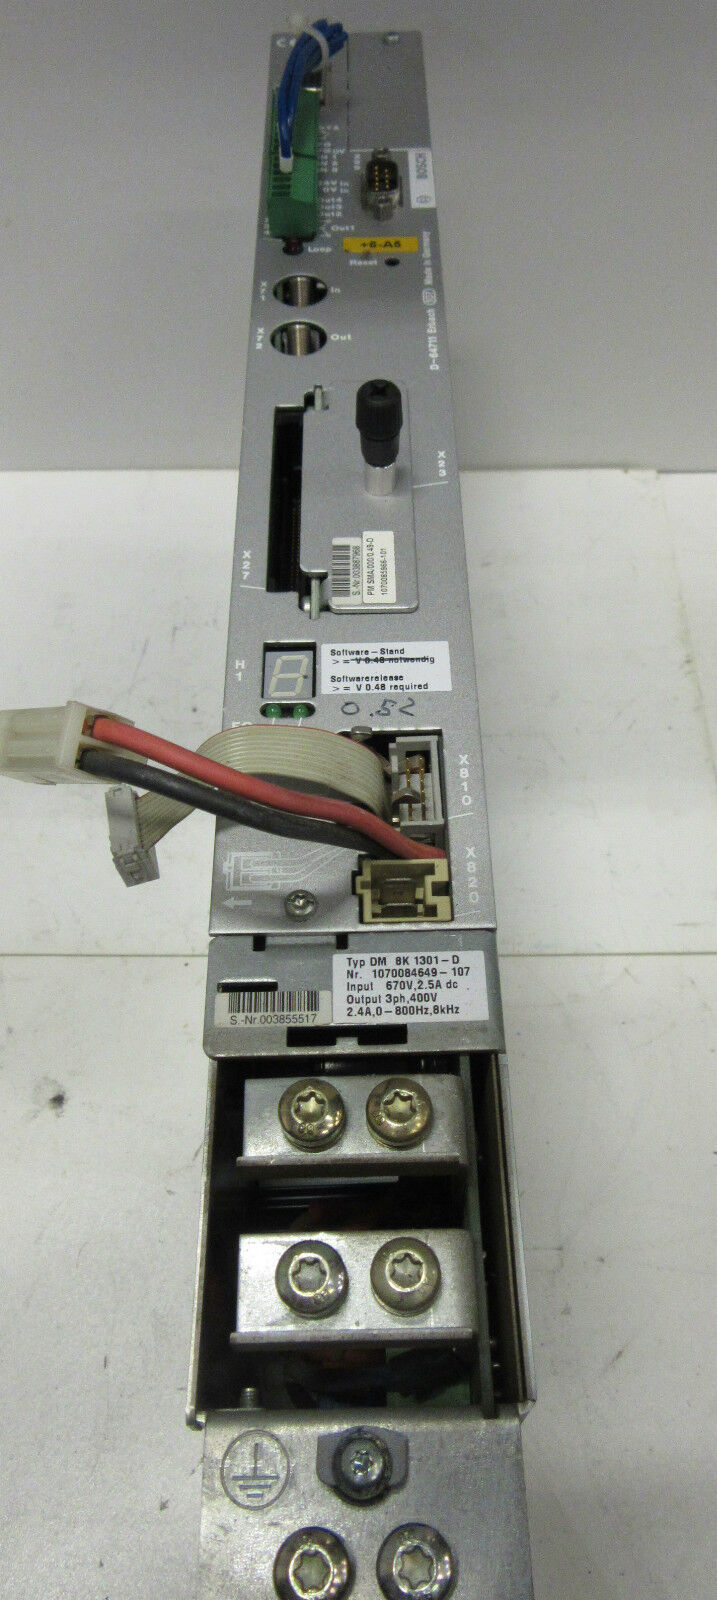 Bosch DM 8K 1301-D | Output : 400V